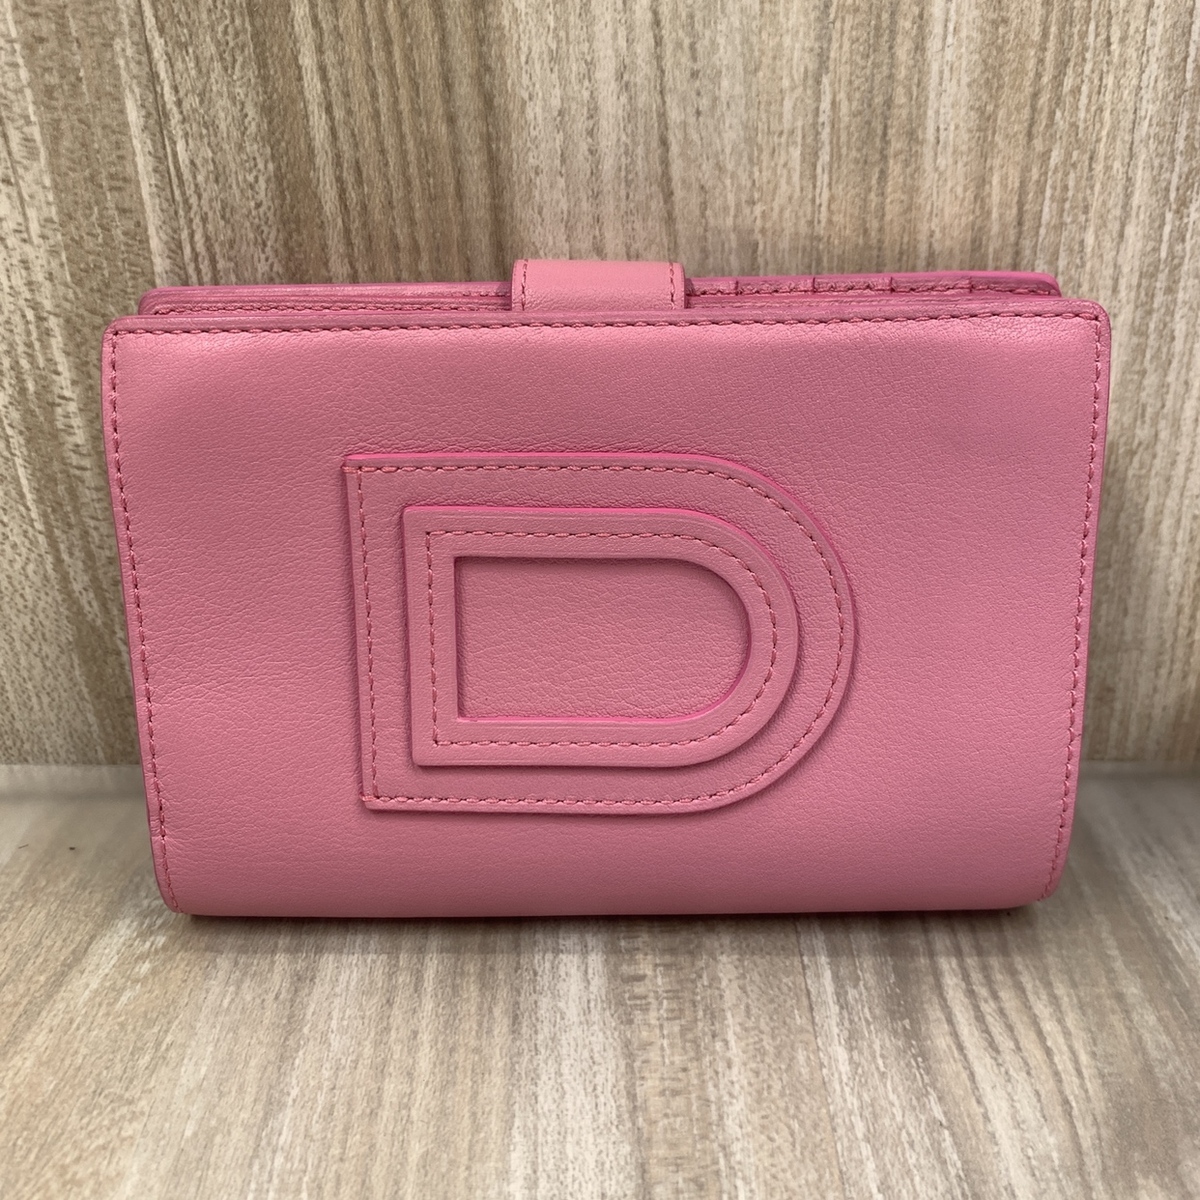 デルボーのピンク レザー 2つ折り財布の買取実績です。